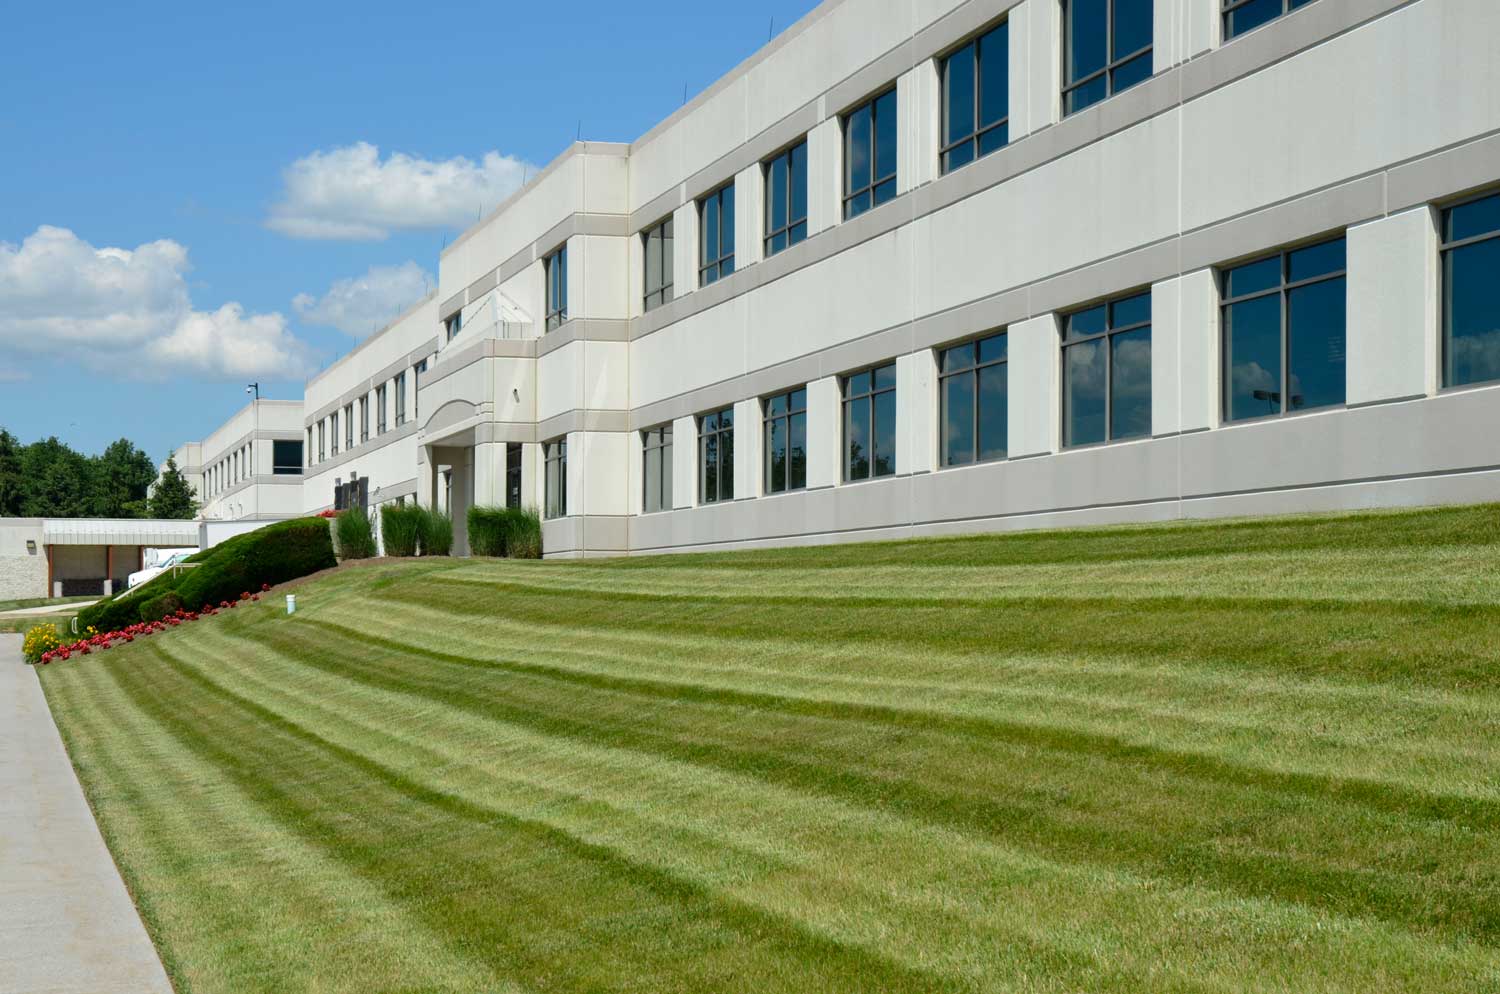 Commercial Landscape Maintenance to Improve Lawns